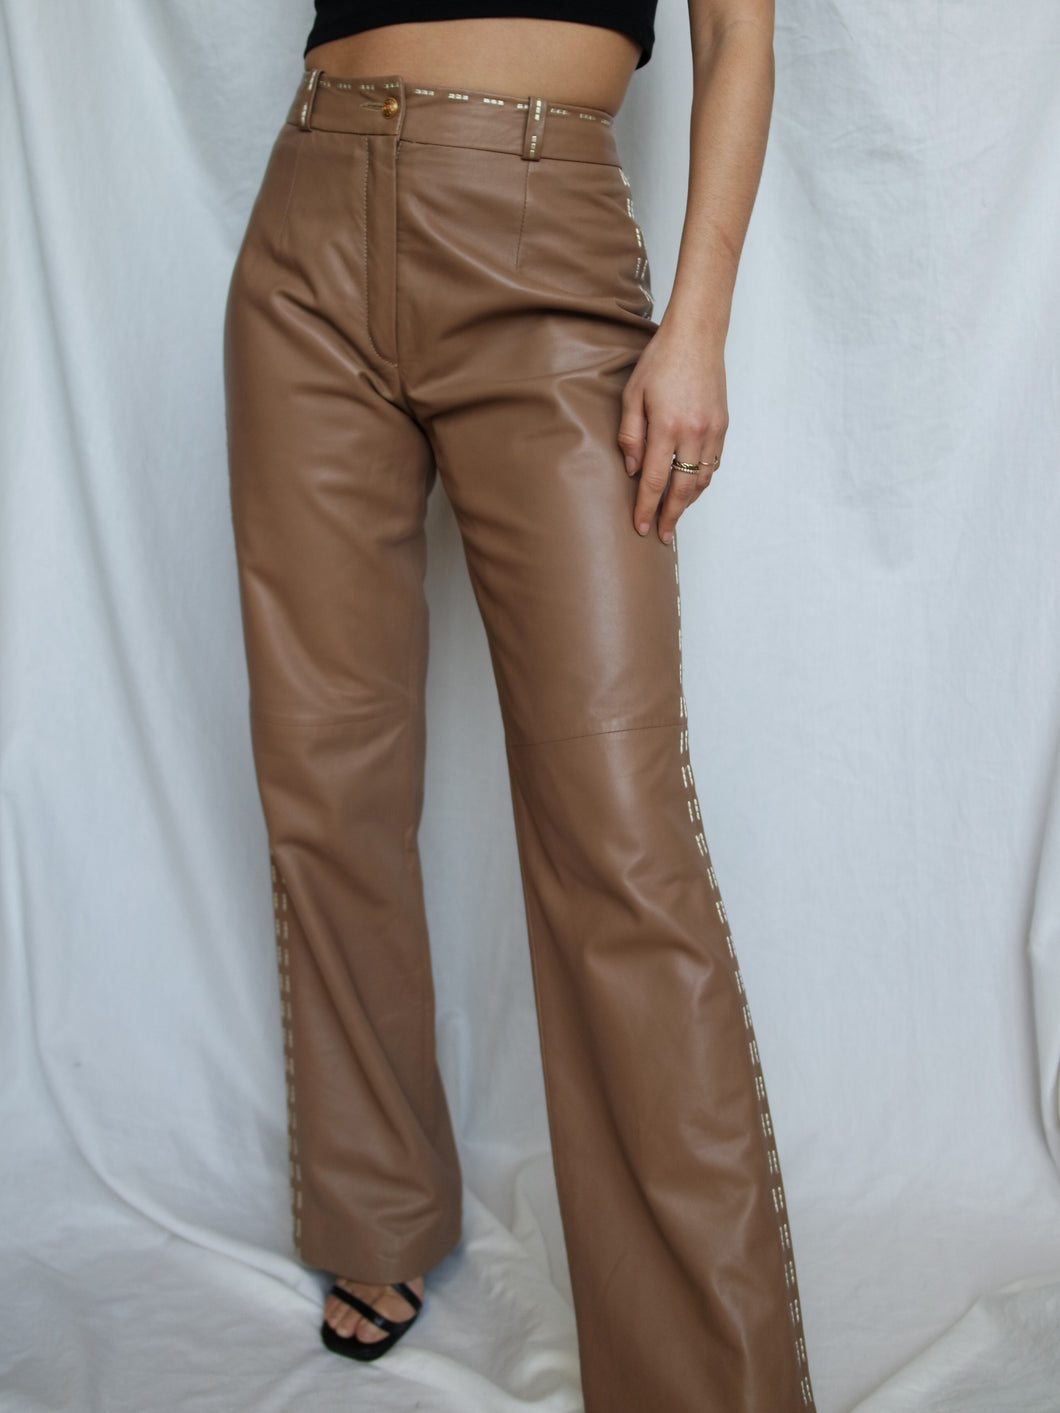 ELEGANCE PARIS leather pants